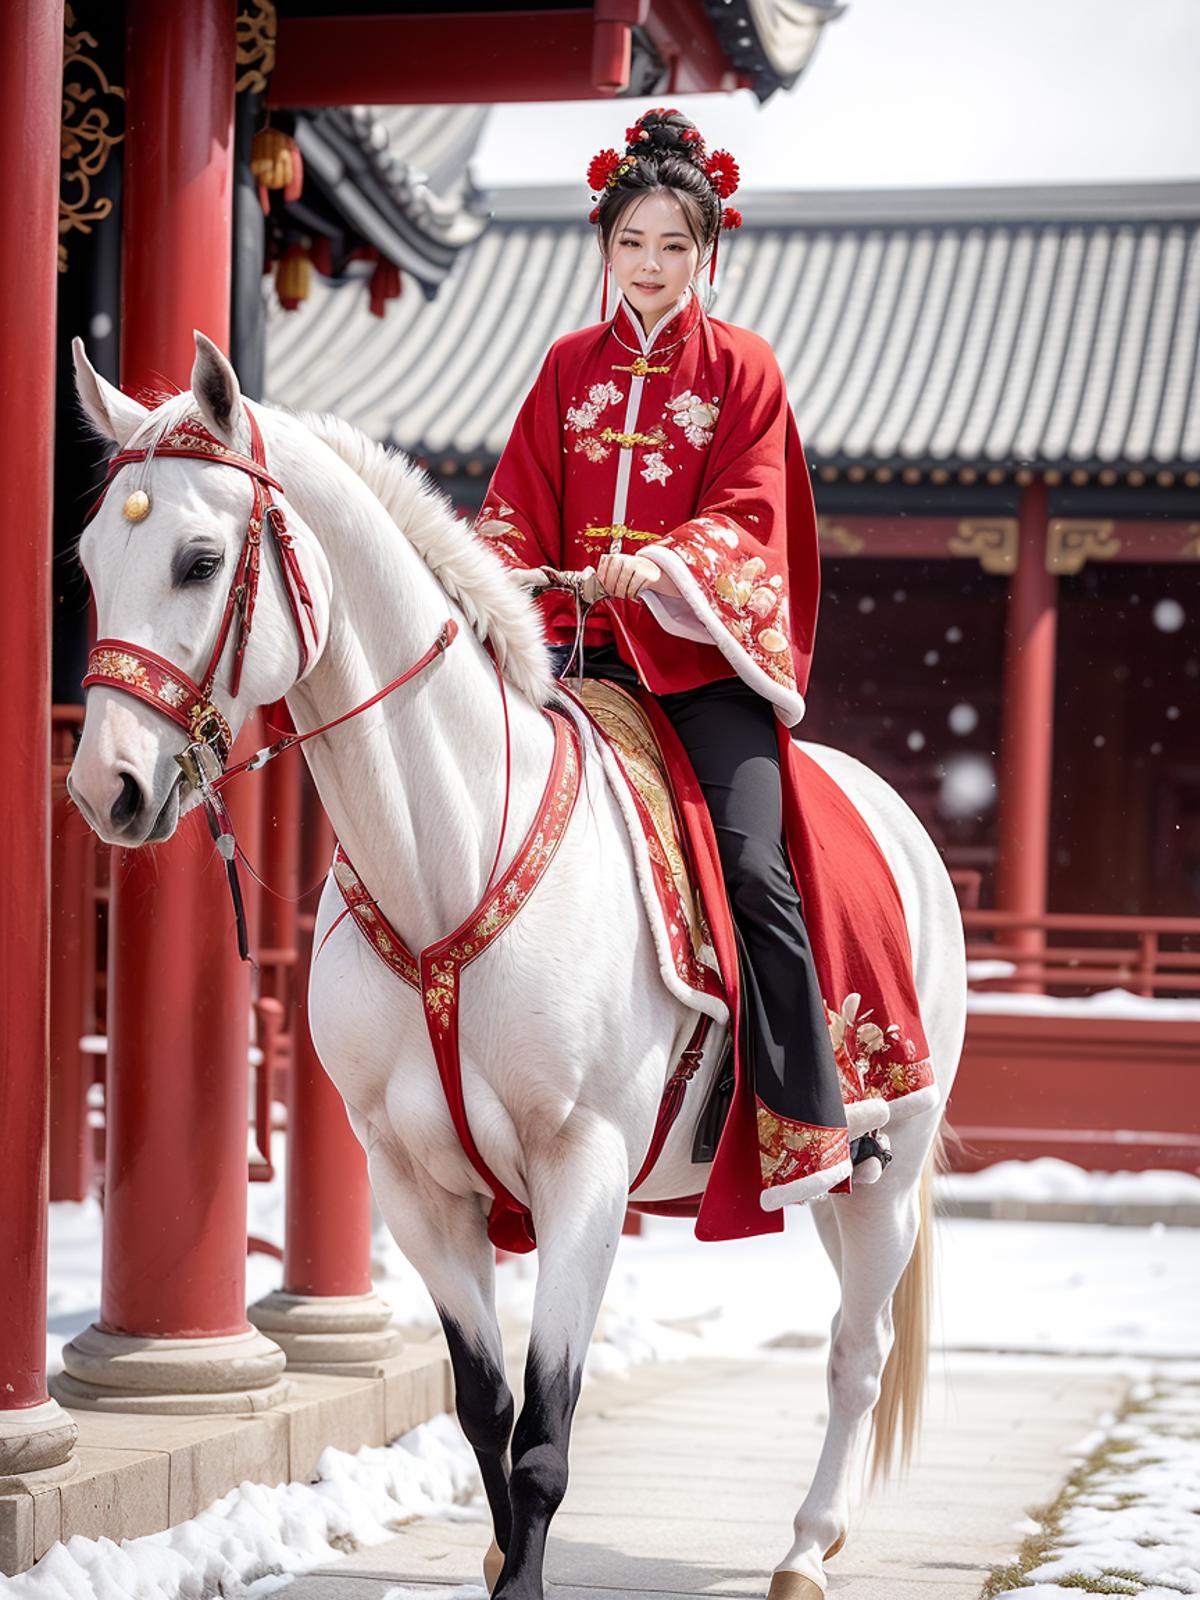 Winter Hanfu - Clothing LoRA image by MoltenHeart